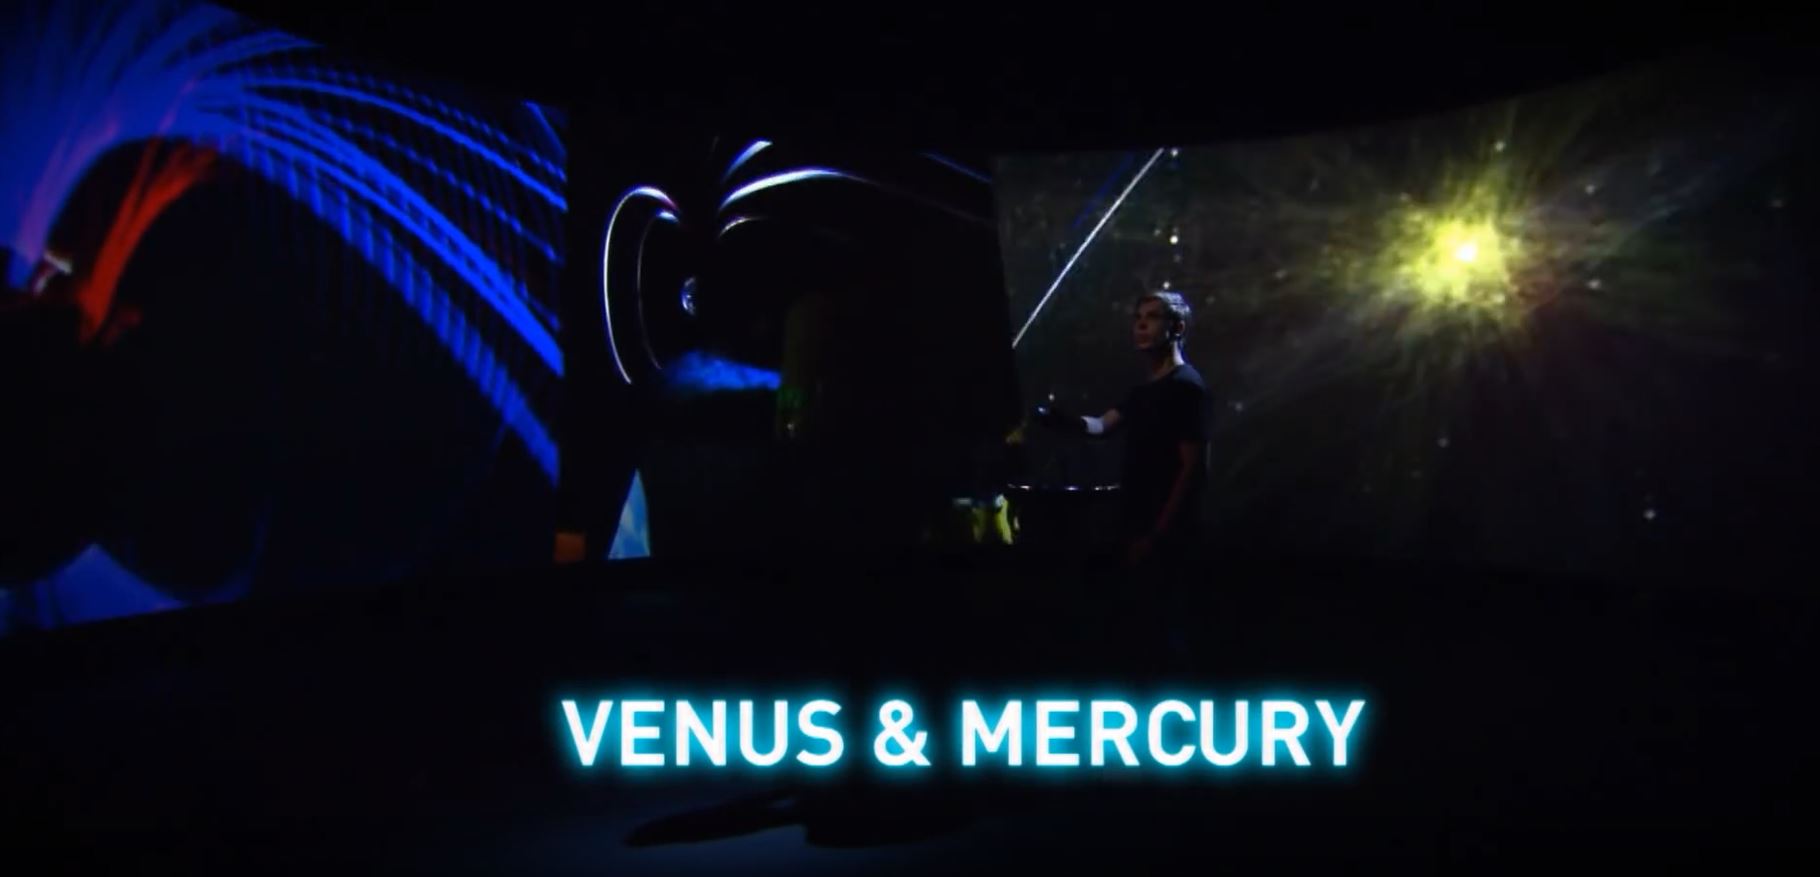 Venus & Mercury